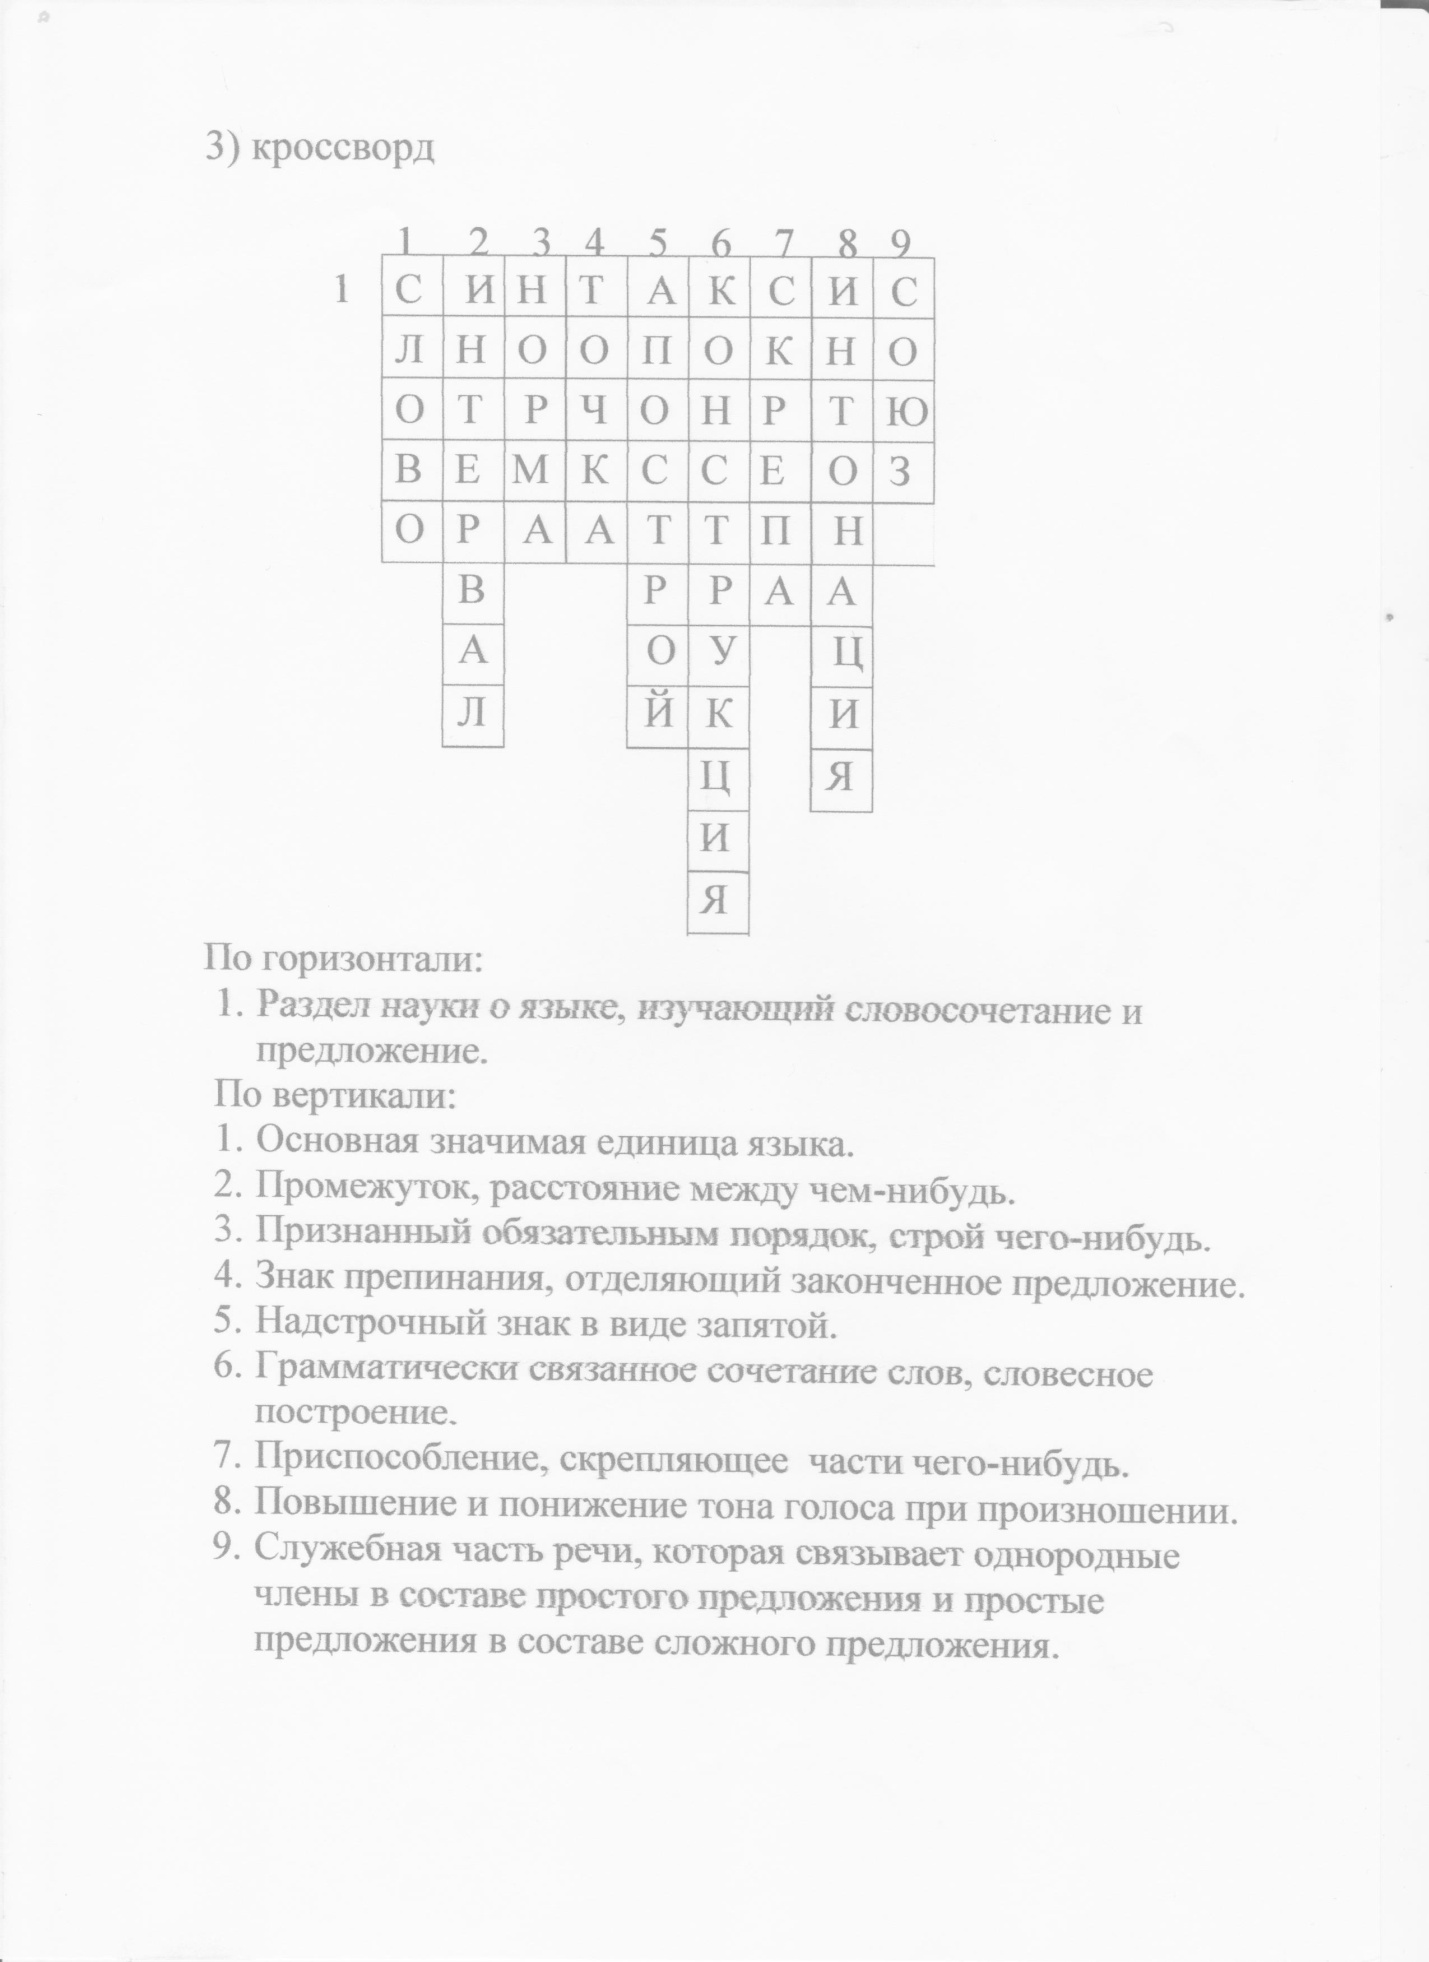 Разработка интегрированного урока по русскому языку и информатике в 9-ом классе